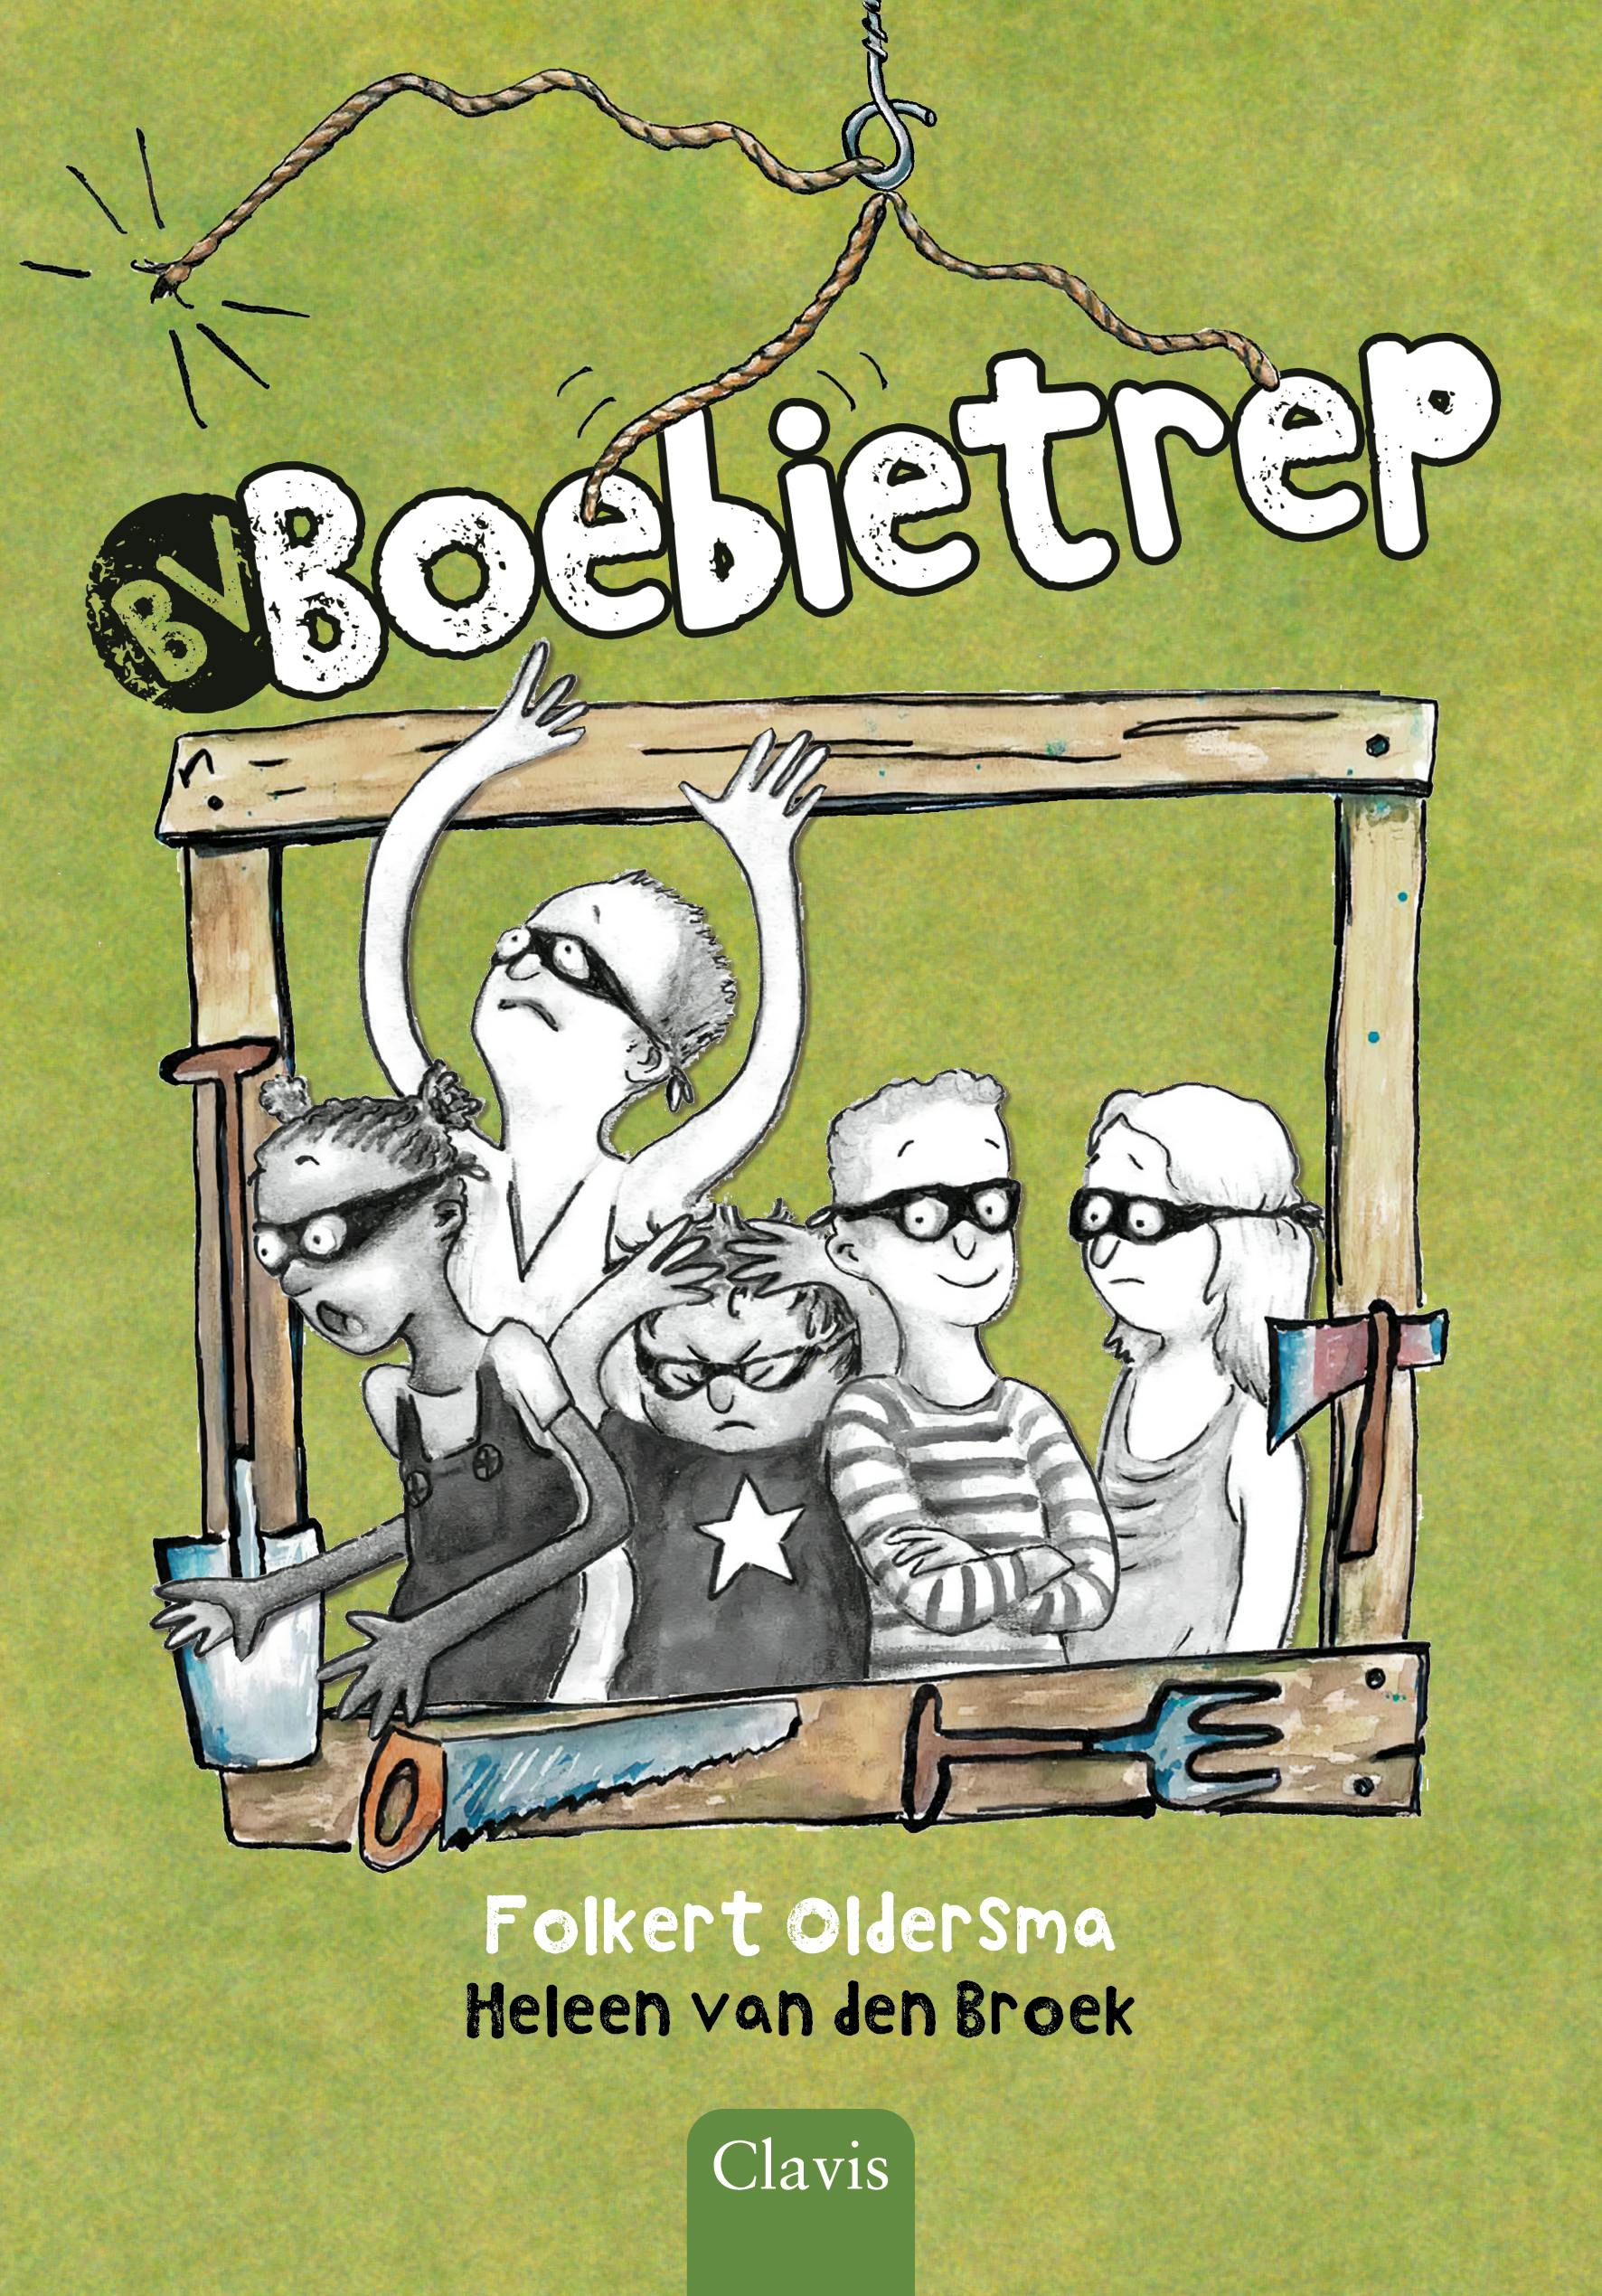 ISBN 9789044844962
Titel BV Boebietrep
Auteur Folkert Oldersma
Illustrator Heleen van den Broek